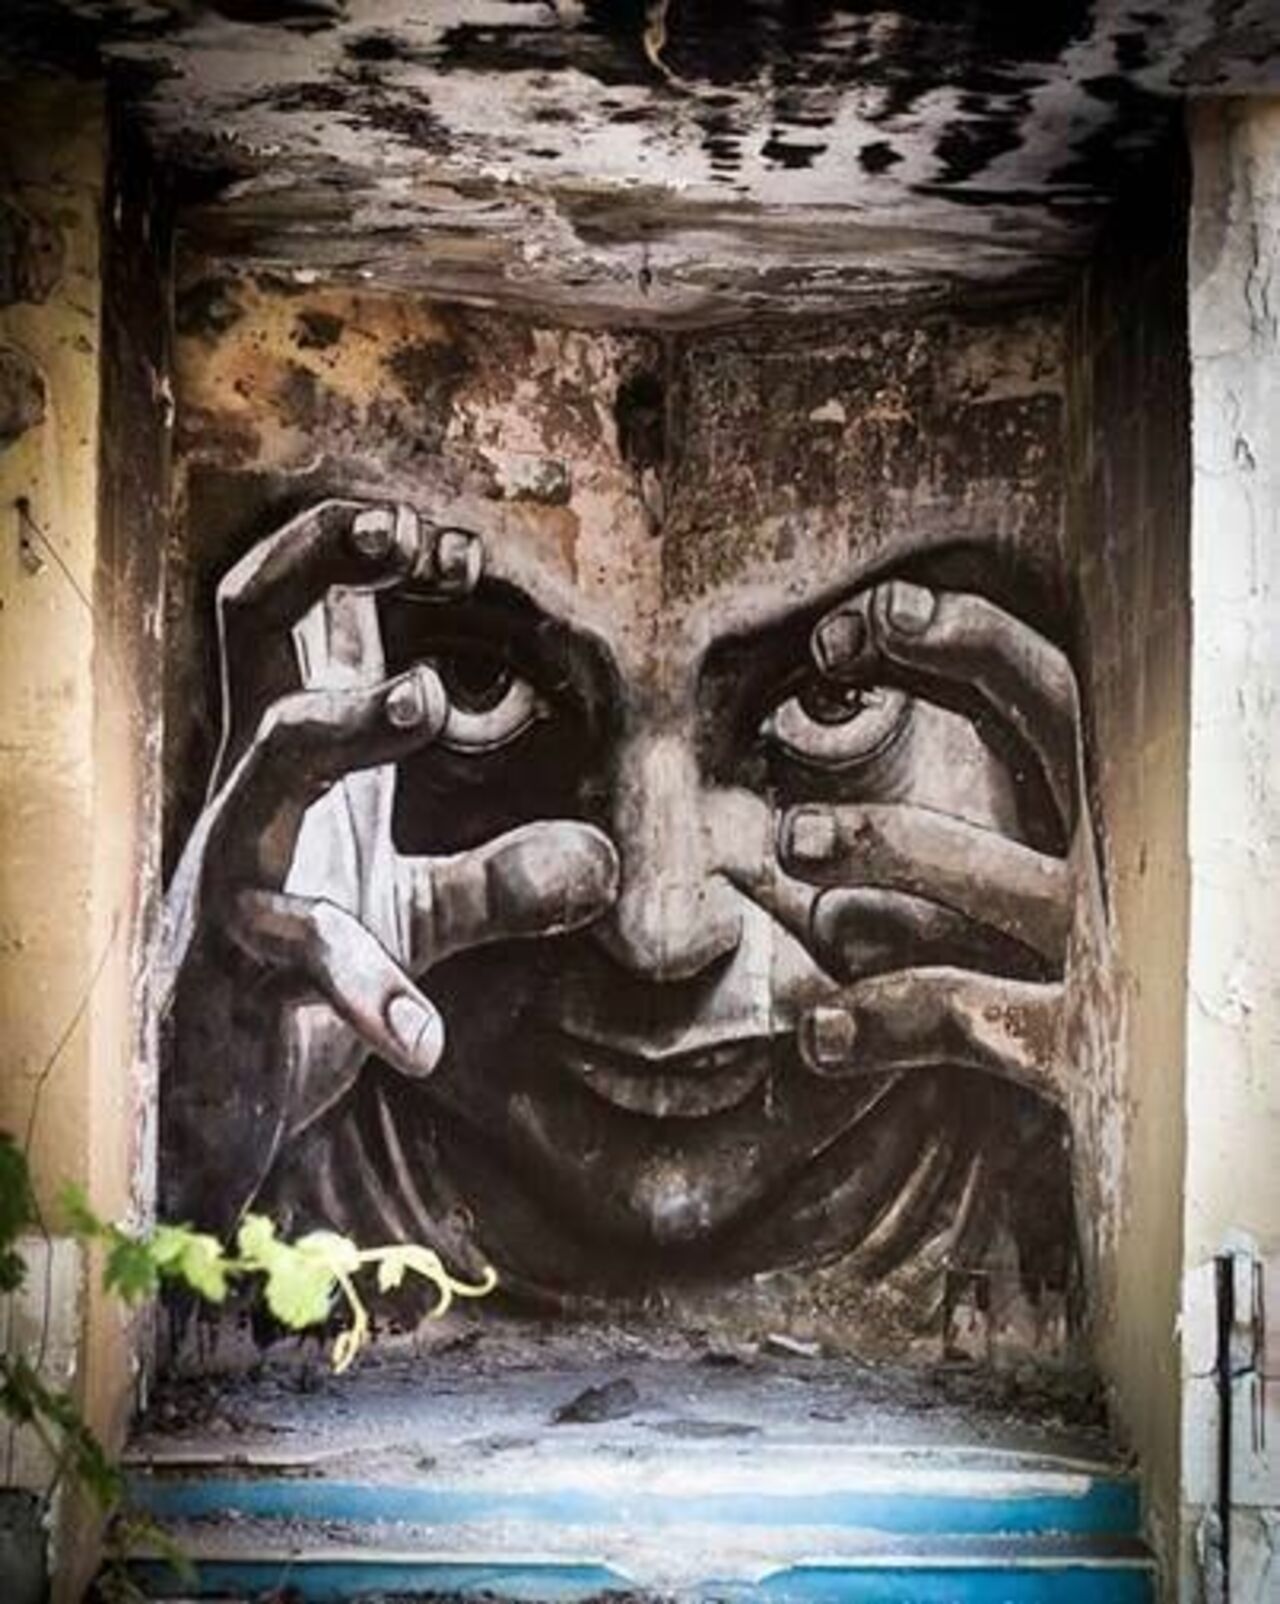 by WD Street Art in Greece#streetart #mural #graffiti #inktober https://t.co/N3z8TqxD9o